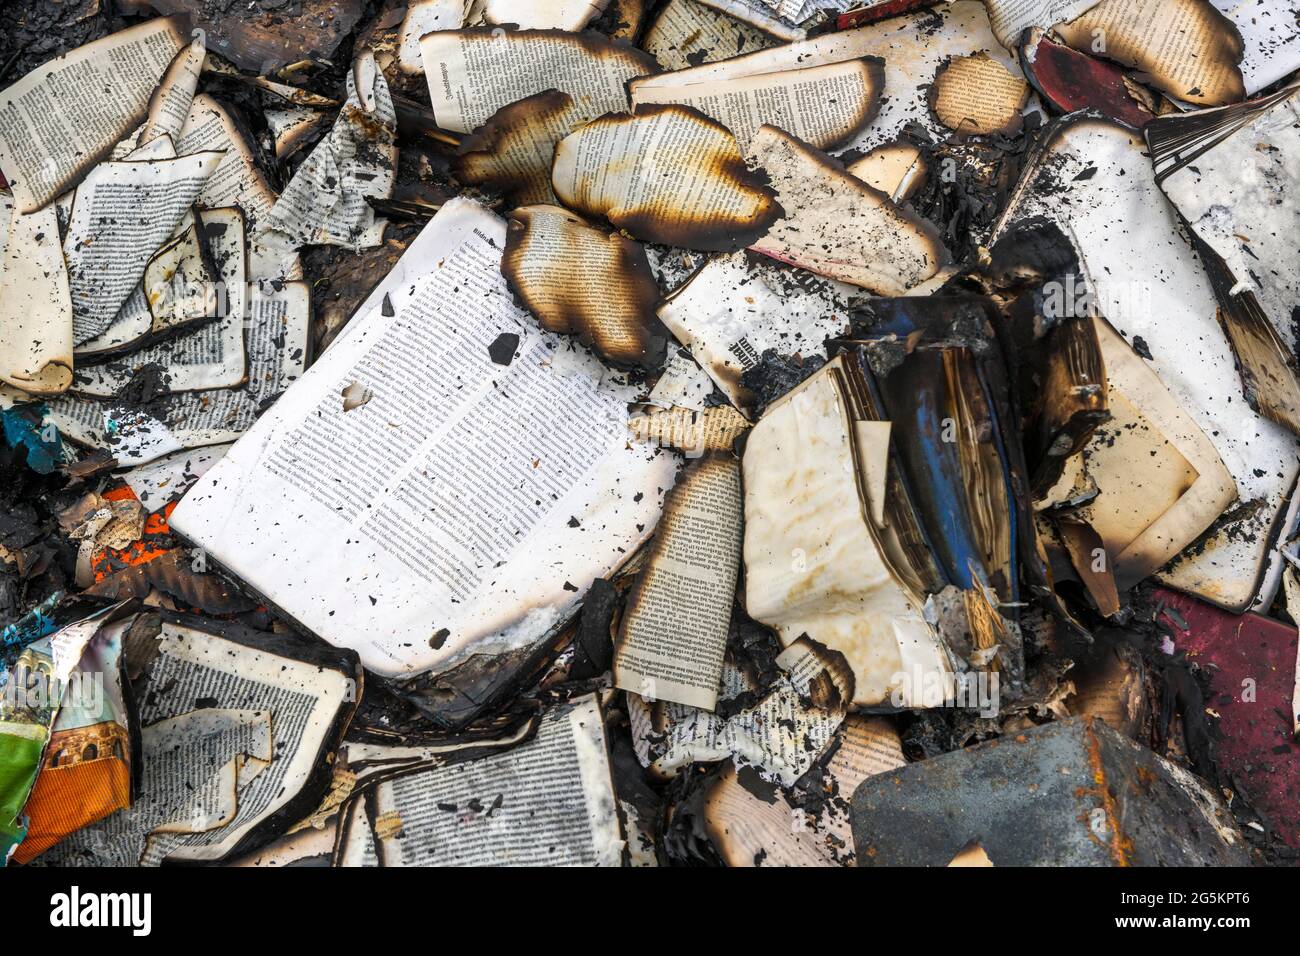 Restos carbonizados de libros después de incendio, Alemania, Europa Foto de stock